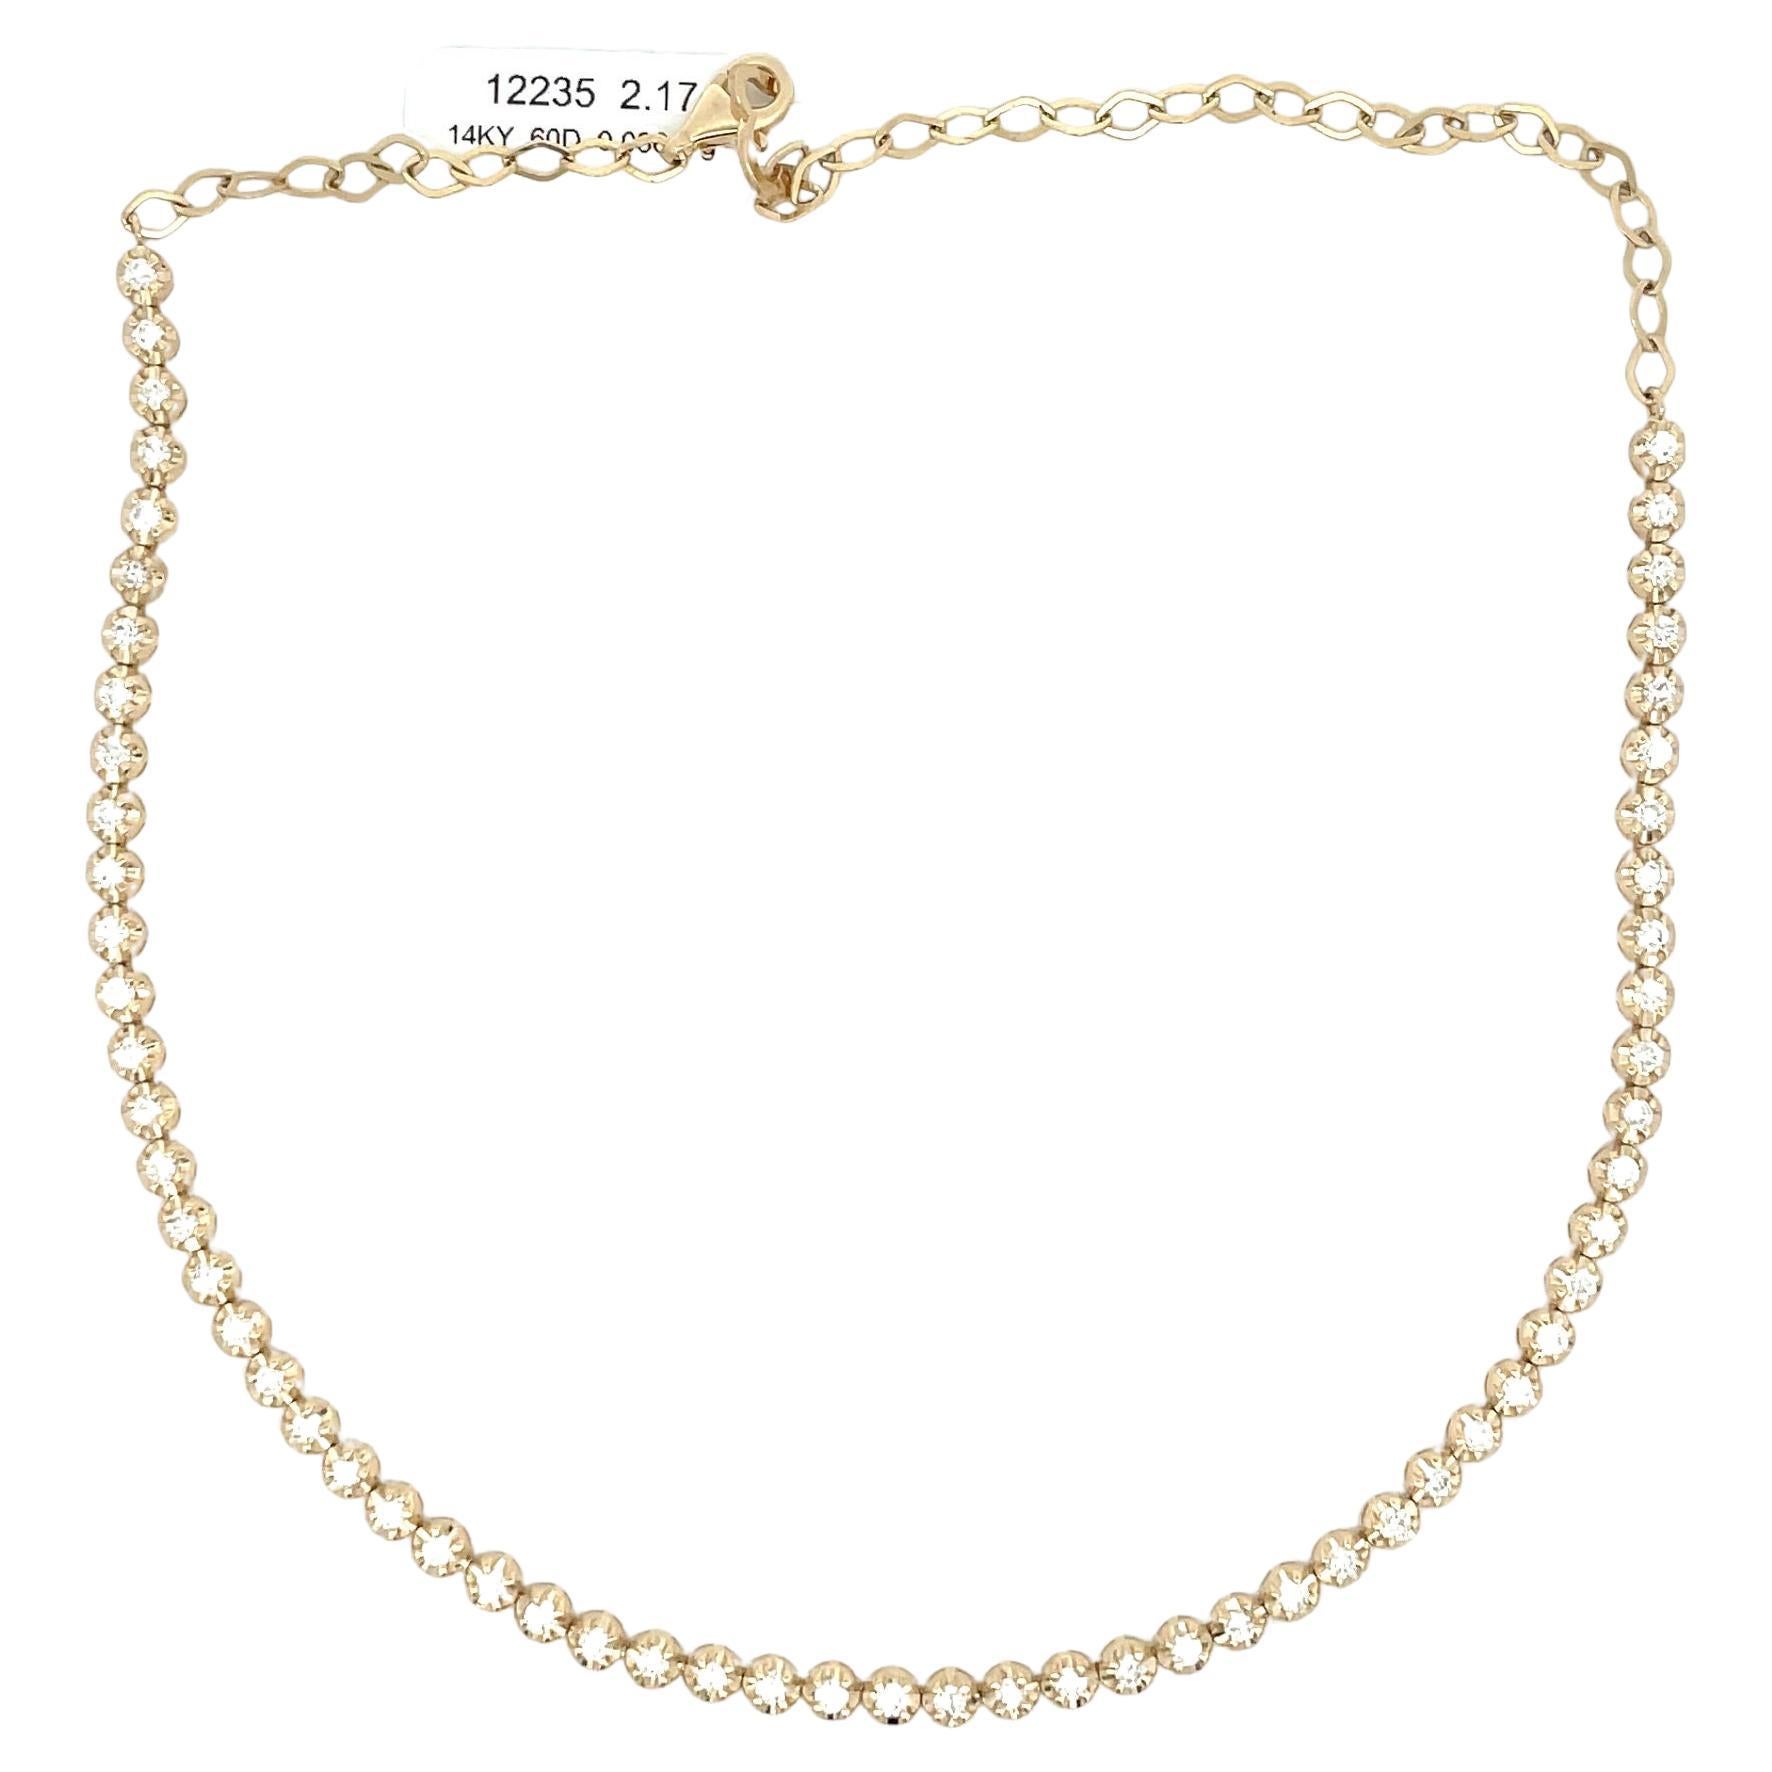 Illusion Setting Diamond Choker Necklace 2.13 Carats 14 Karat Yellow Gold